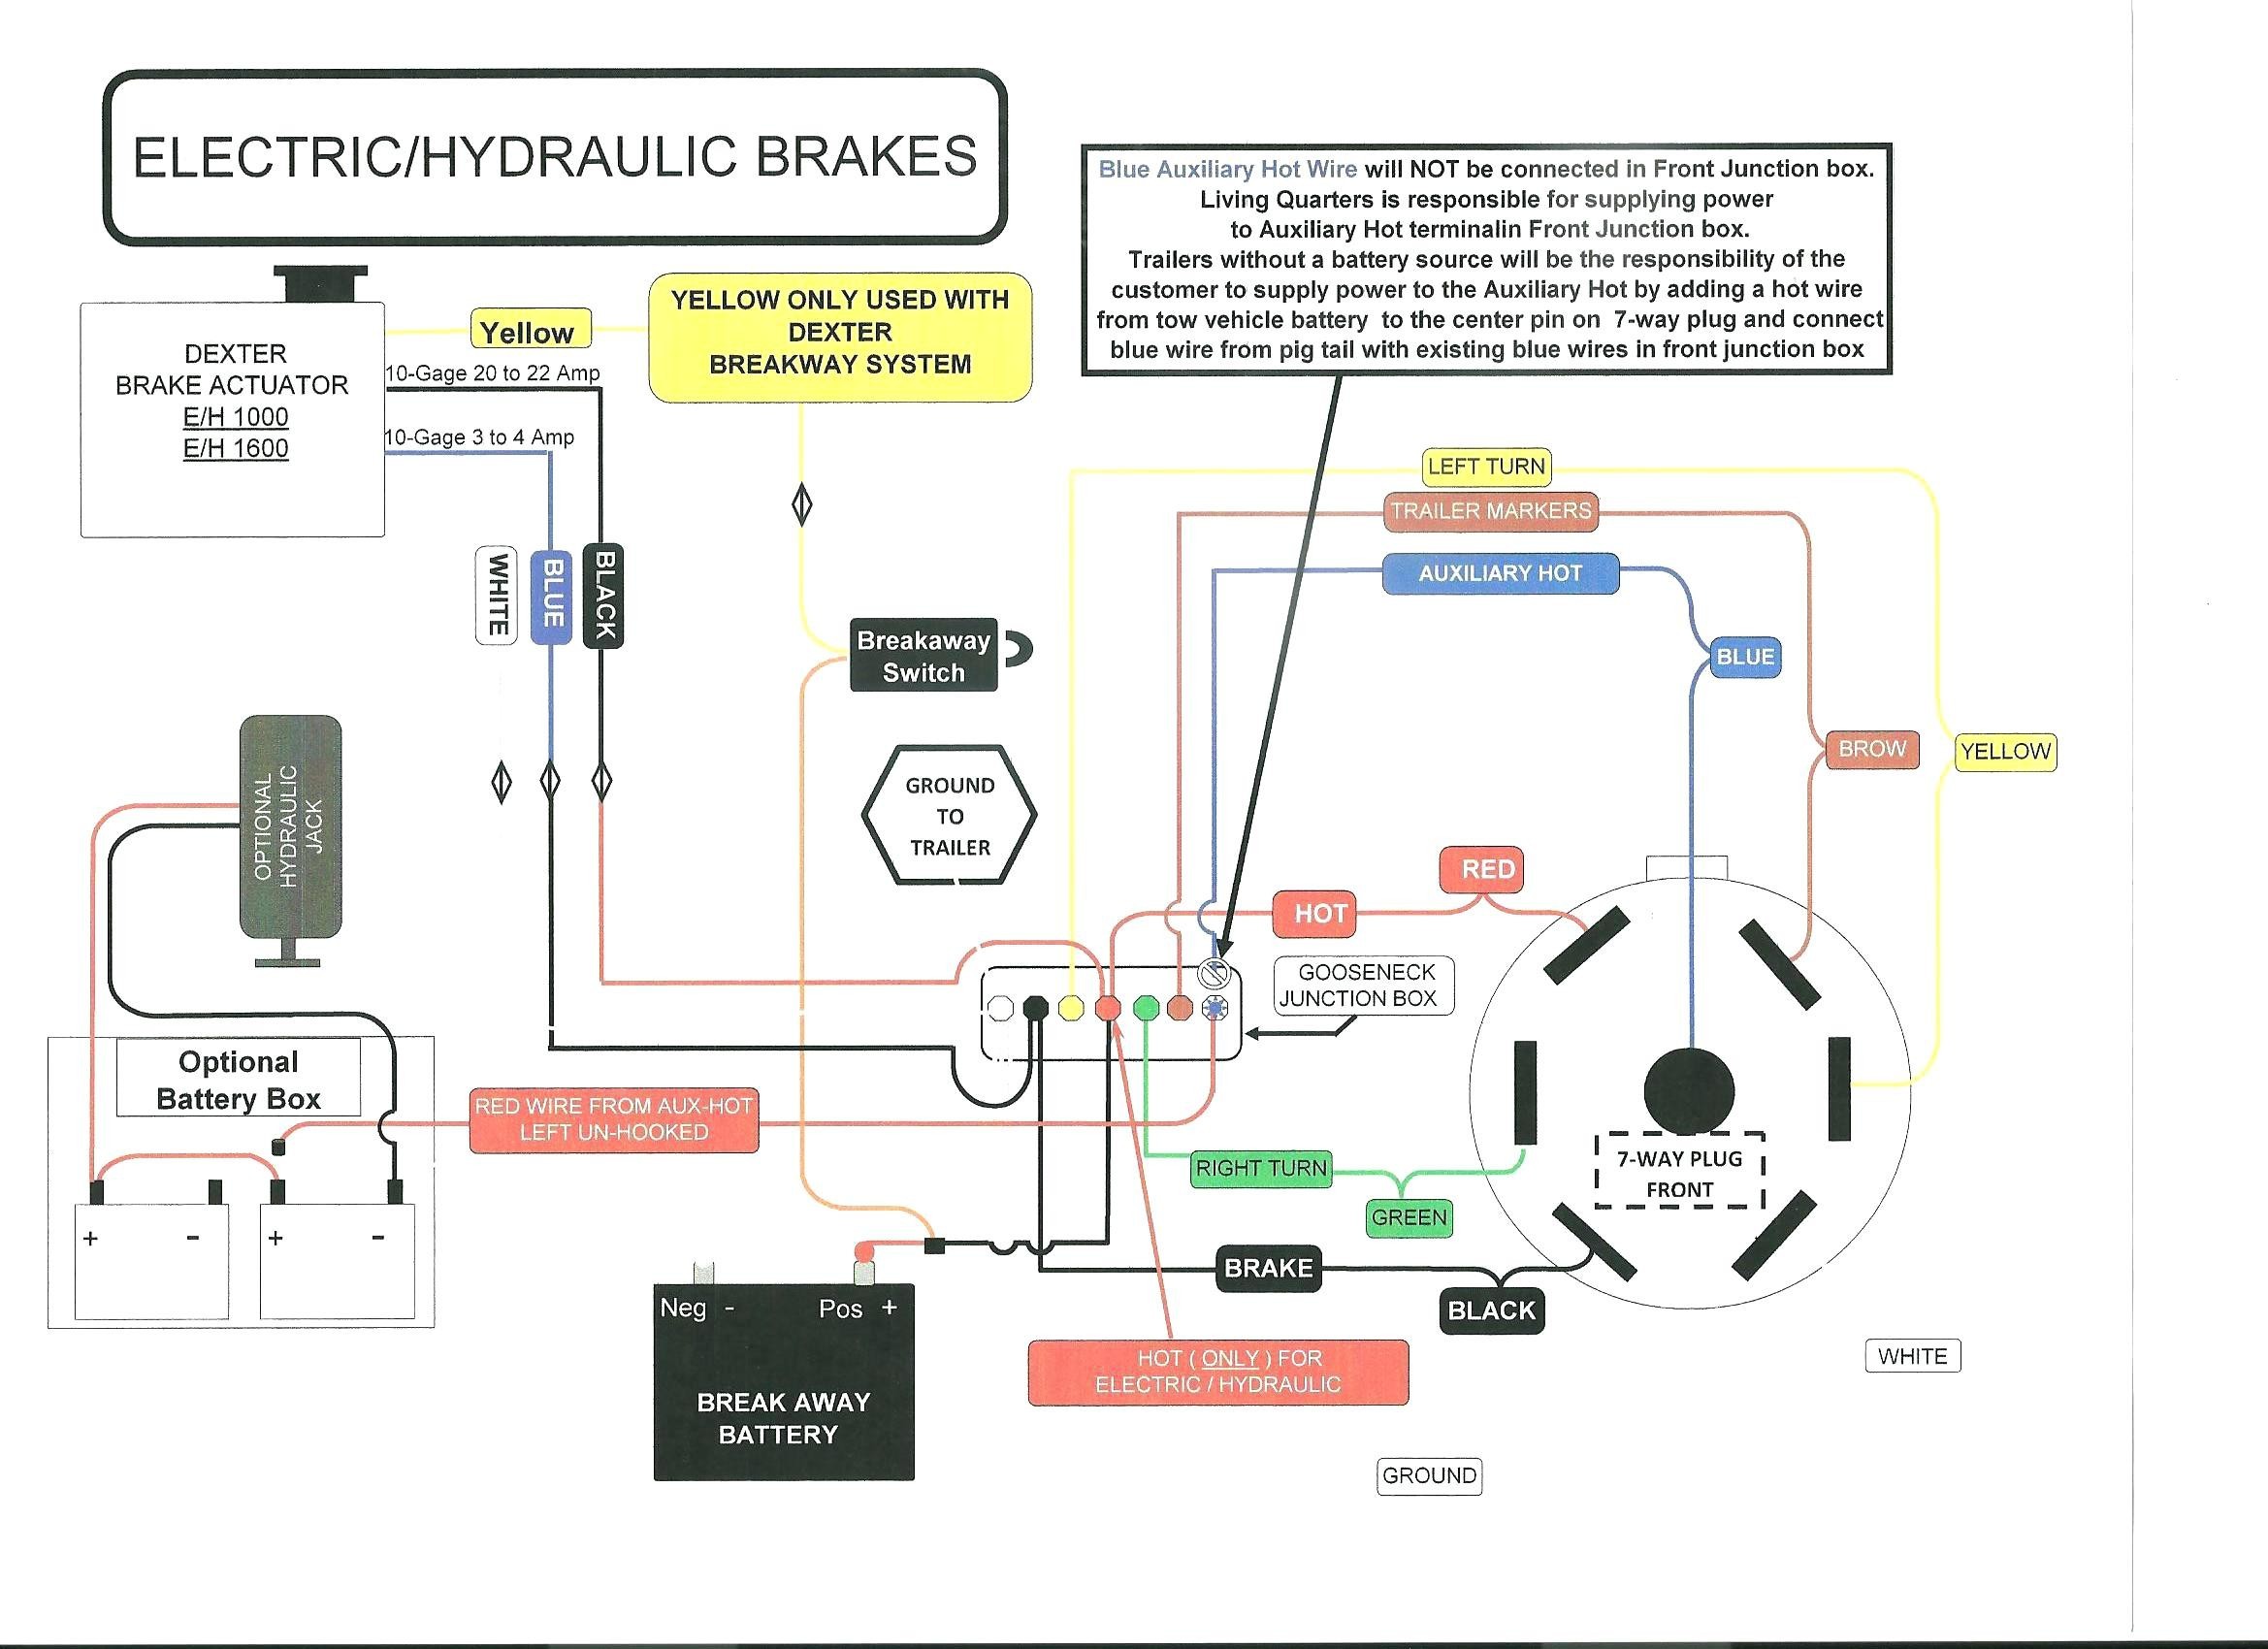 Wiring Diagram Trailer Brakes Save 7 Electric Trailer Brake Wiring Diagram Cable within Volovetsfo